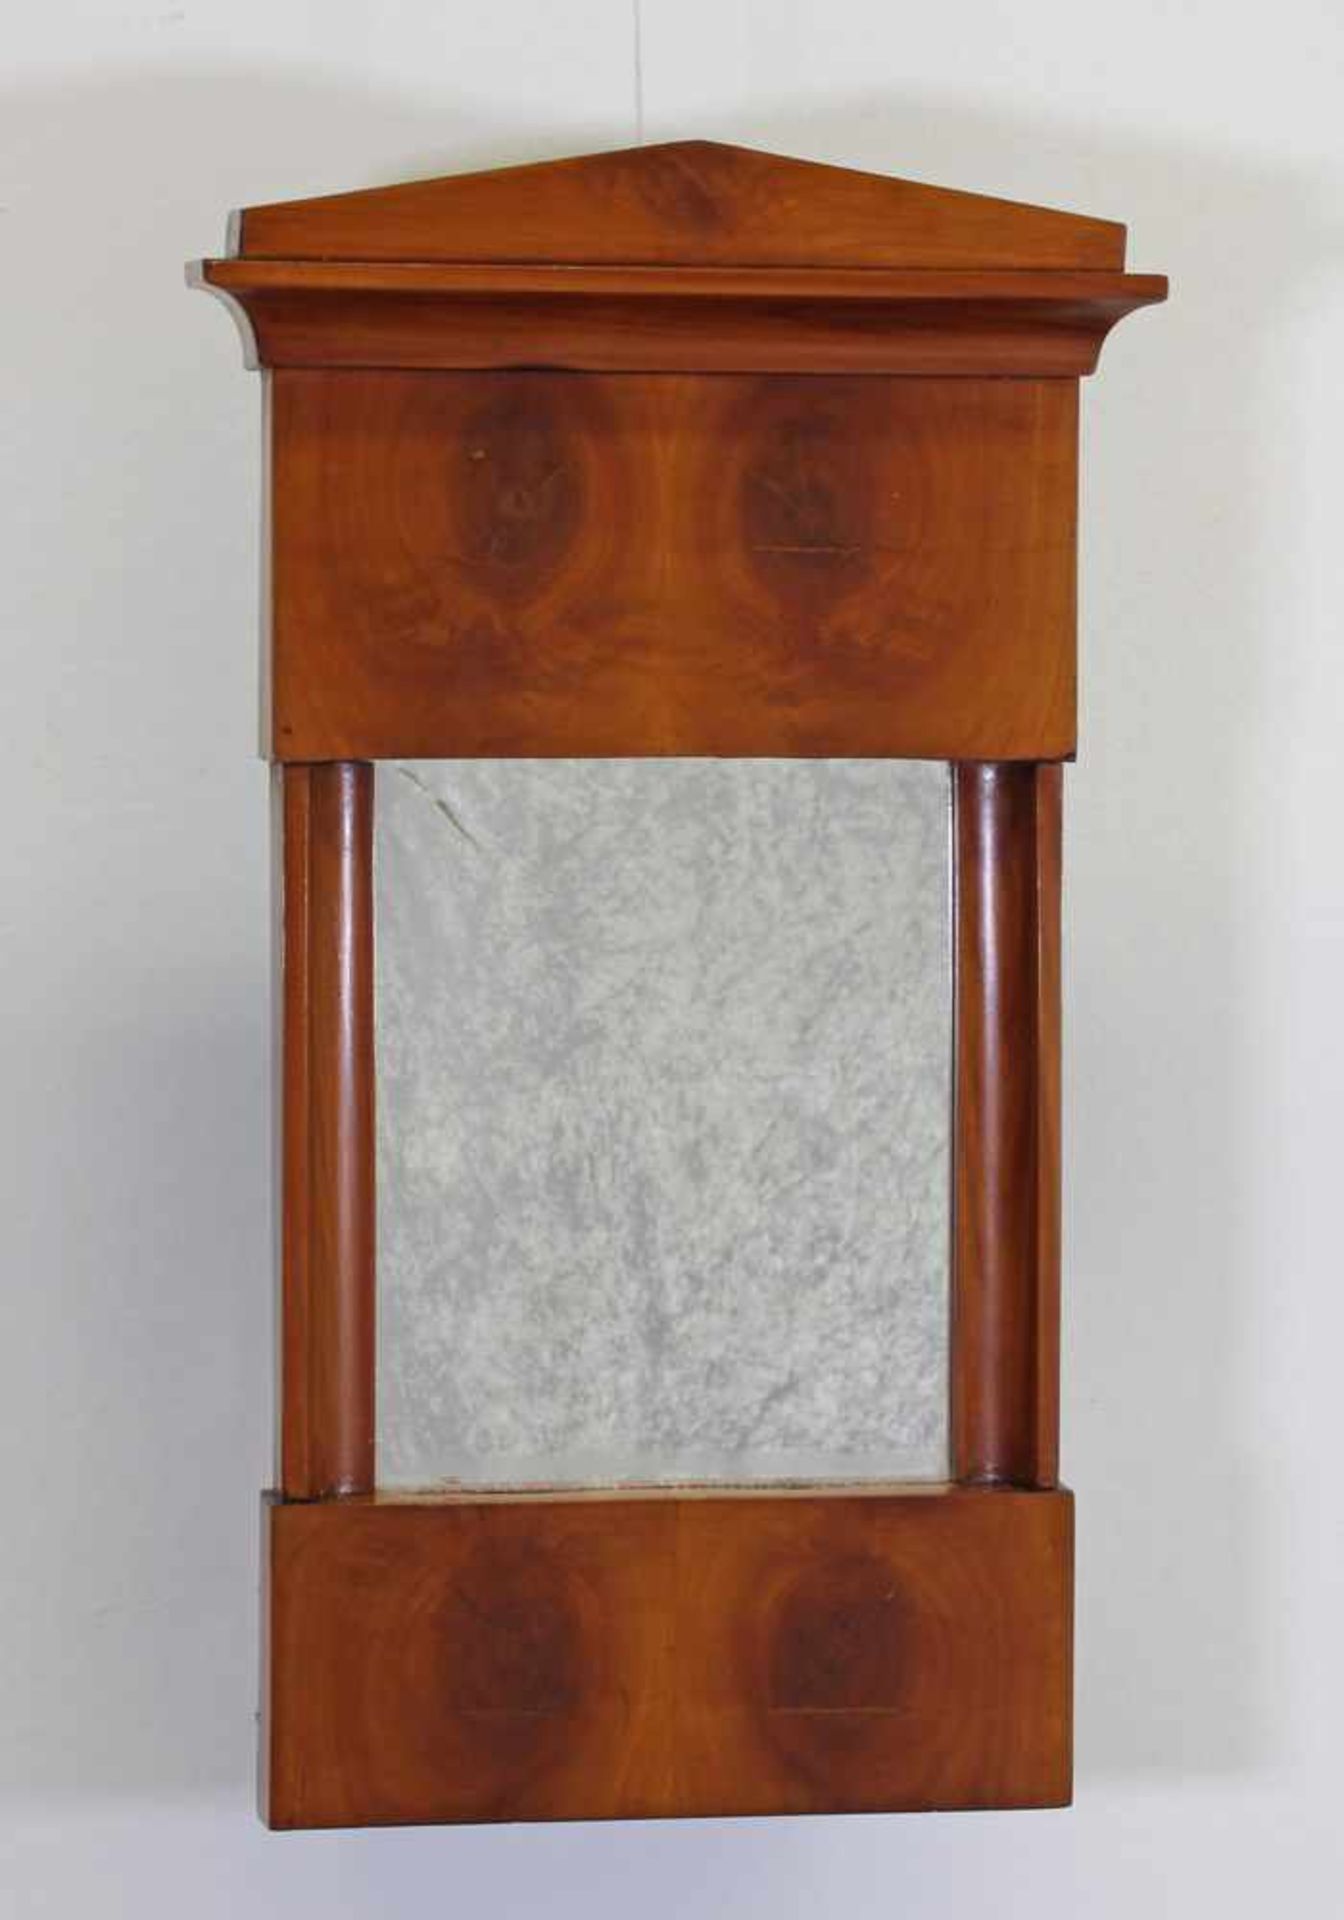 Spiegel, Biedermeier, um 1820, Kirschbaum, 61 x 35 cm- - -25.00 % buyer's premium on the hammer